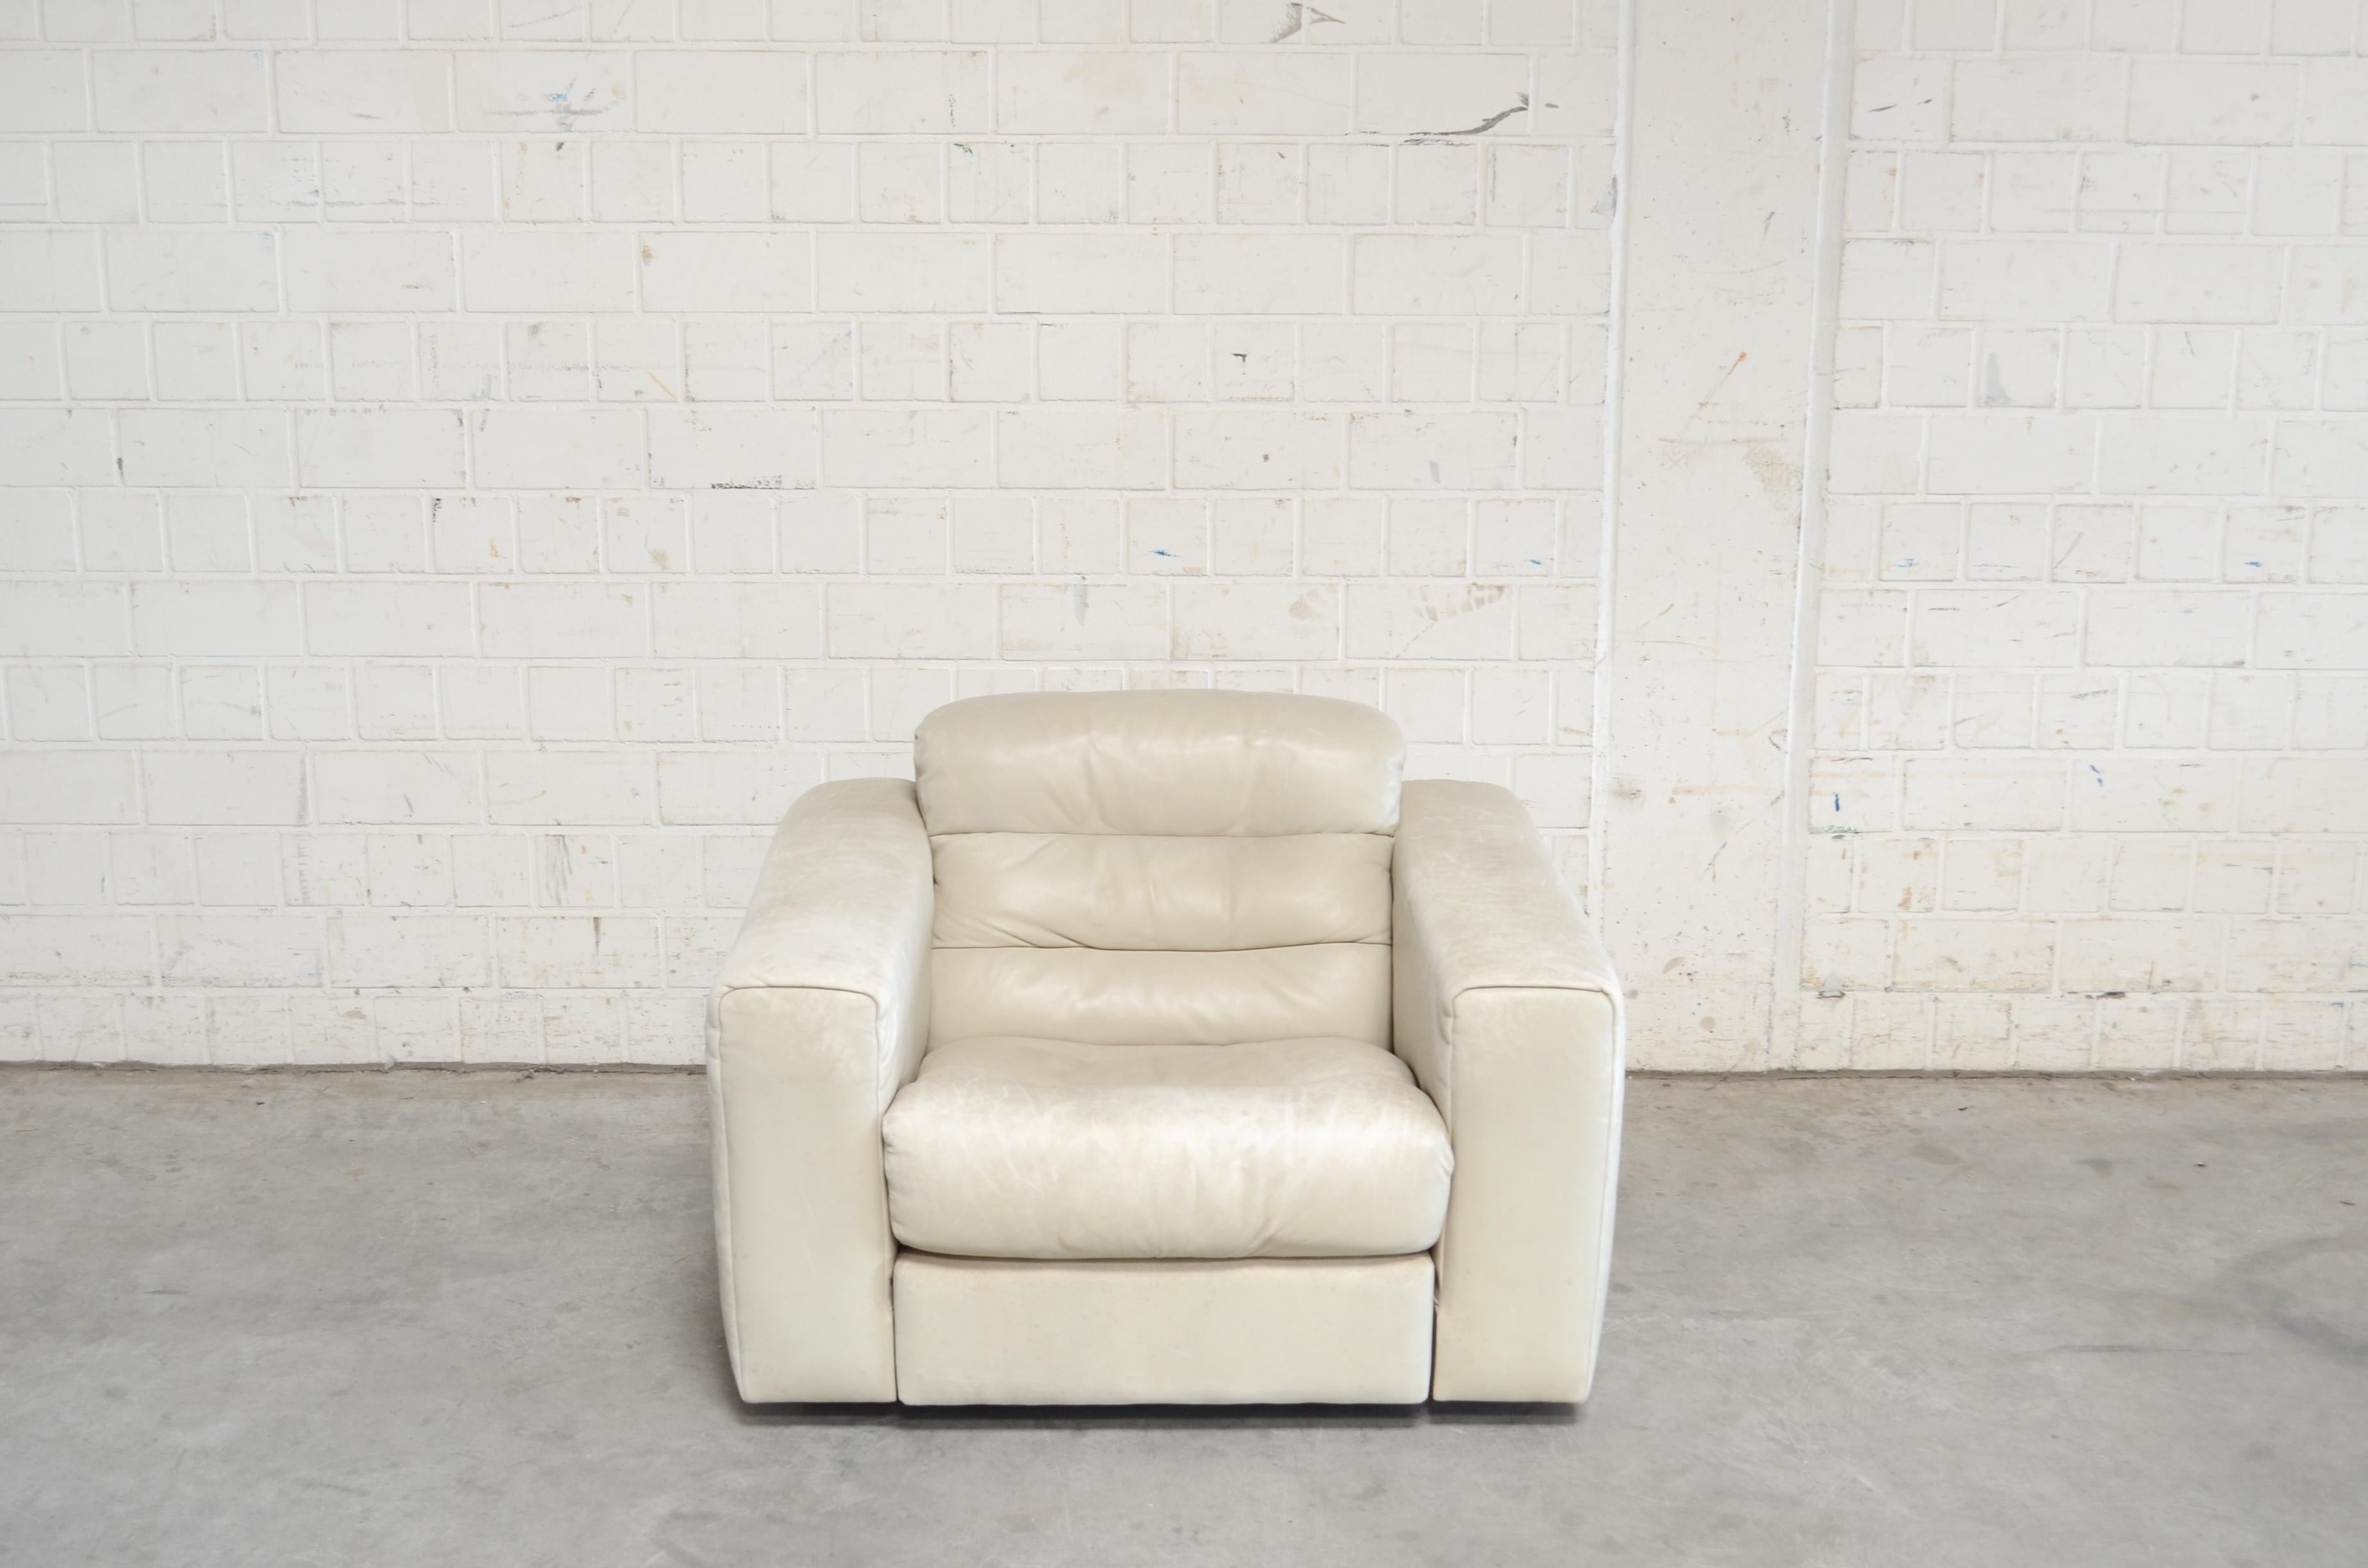 De Sede Ledersessel DS 105.
Anilinleder in ecru-weiß
Großer Komfort mit einem ausziehbaren Sitz für mehr Lounge-Komfort.
Es ist ein seltenes Modell von De Sede.
Schwer zu finden.
 
 
 
 
  